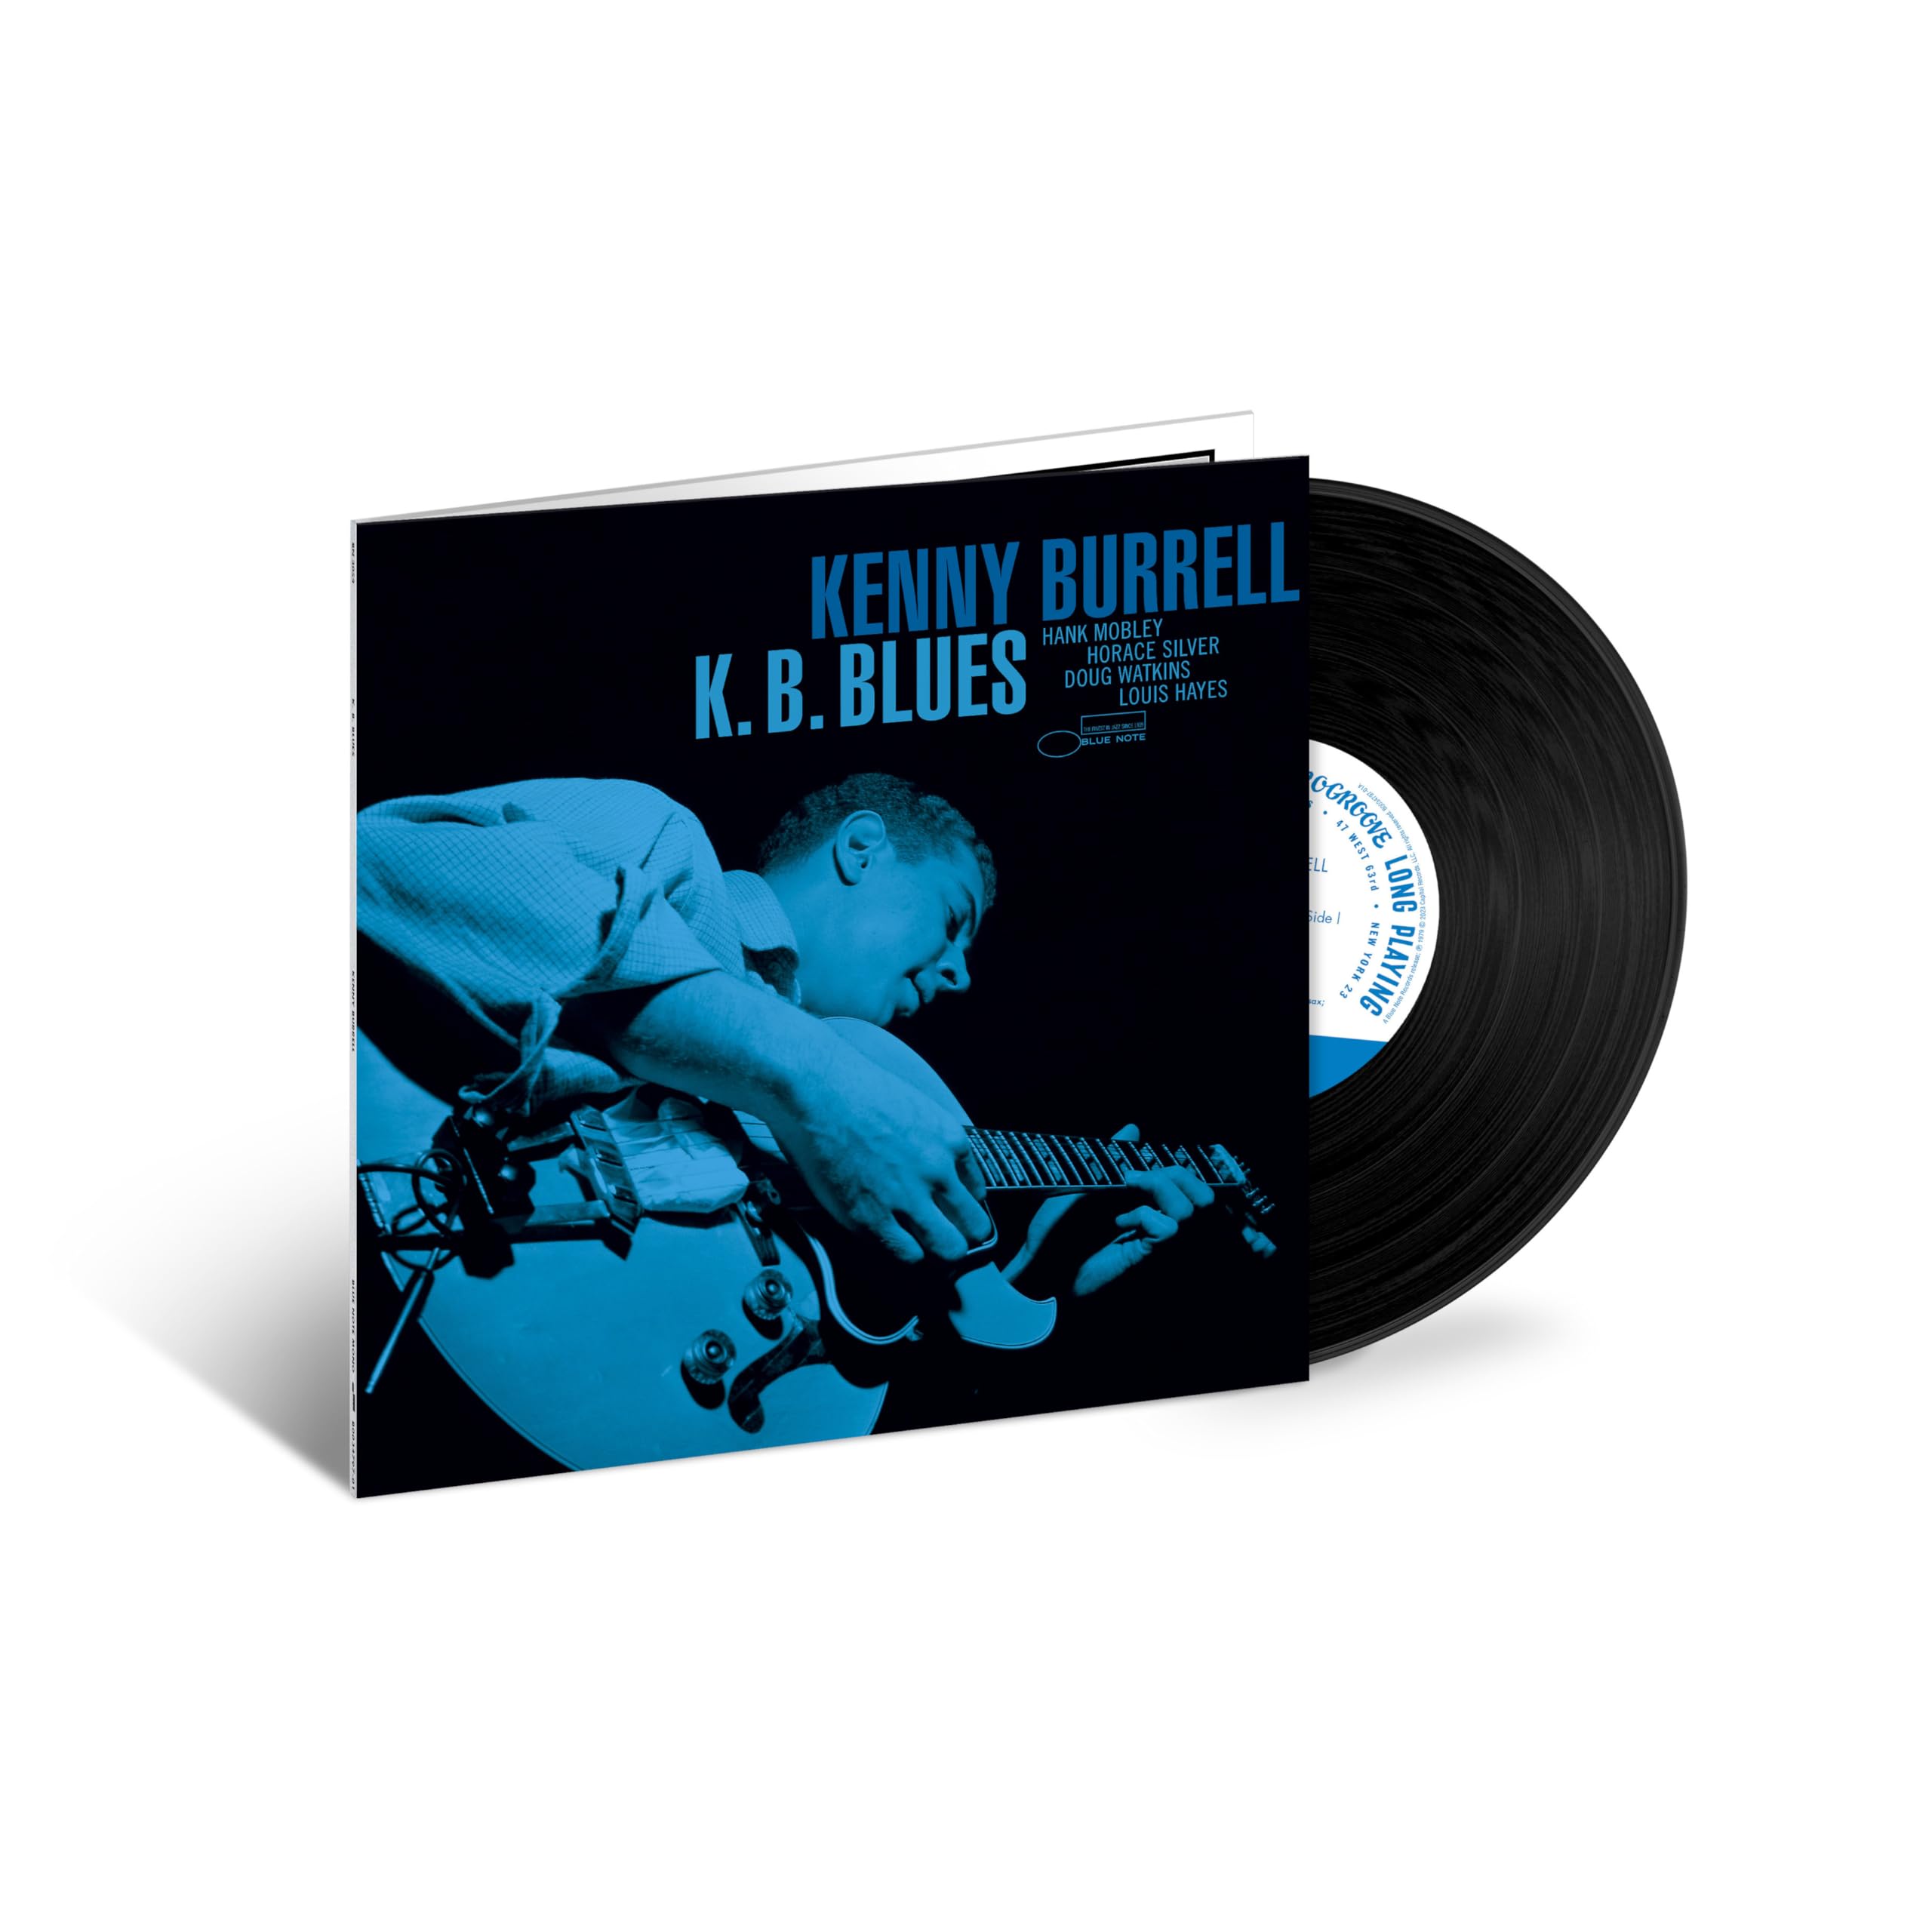 K.B. Blues (Blue Note Tone Poet Series) (Vinyl)